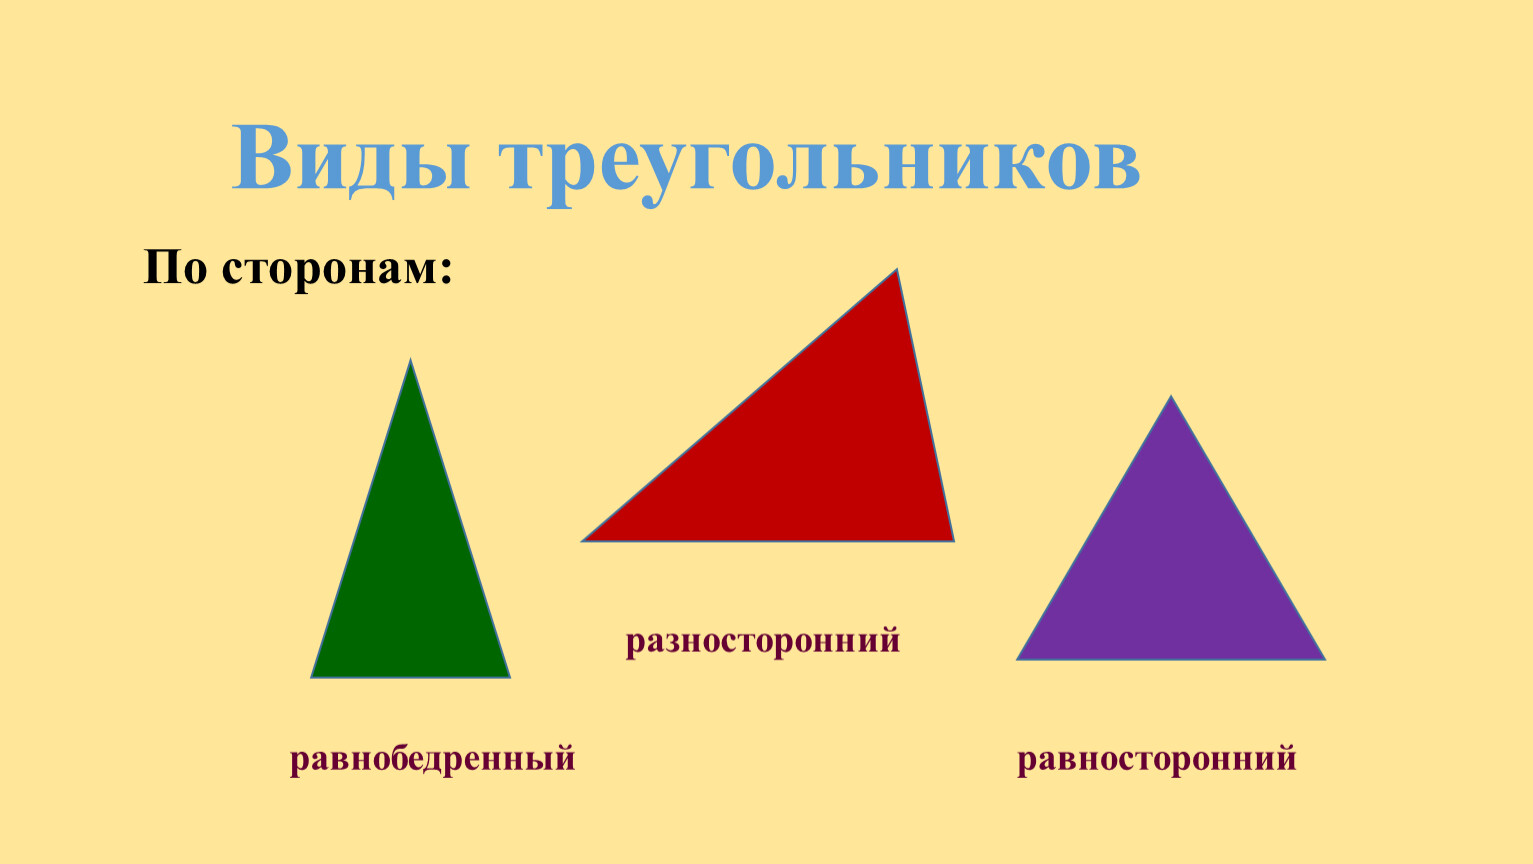 Равнобедренный равносторонний и разносторонний треугольники